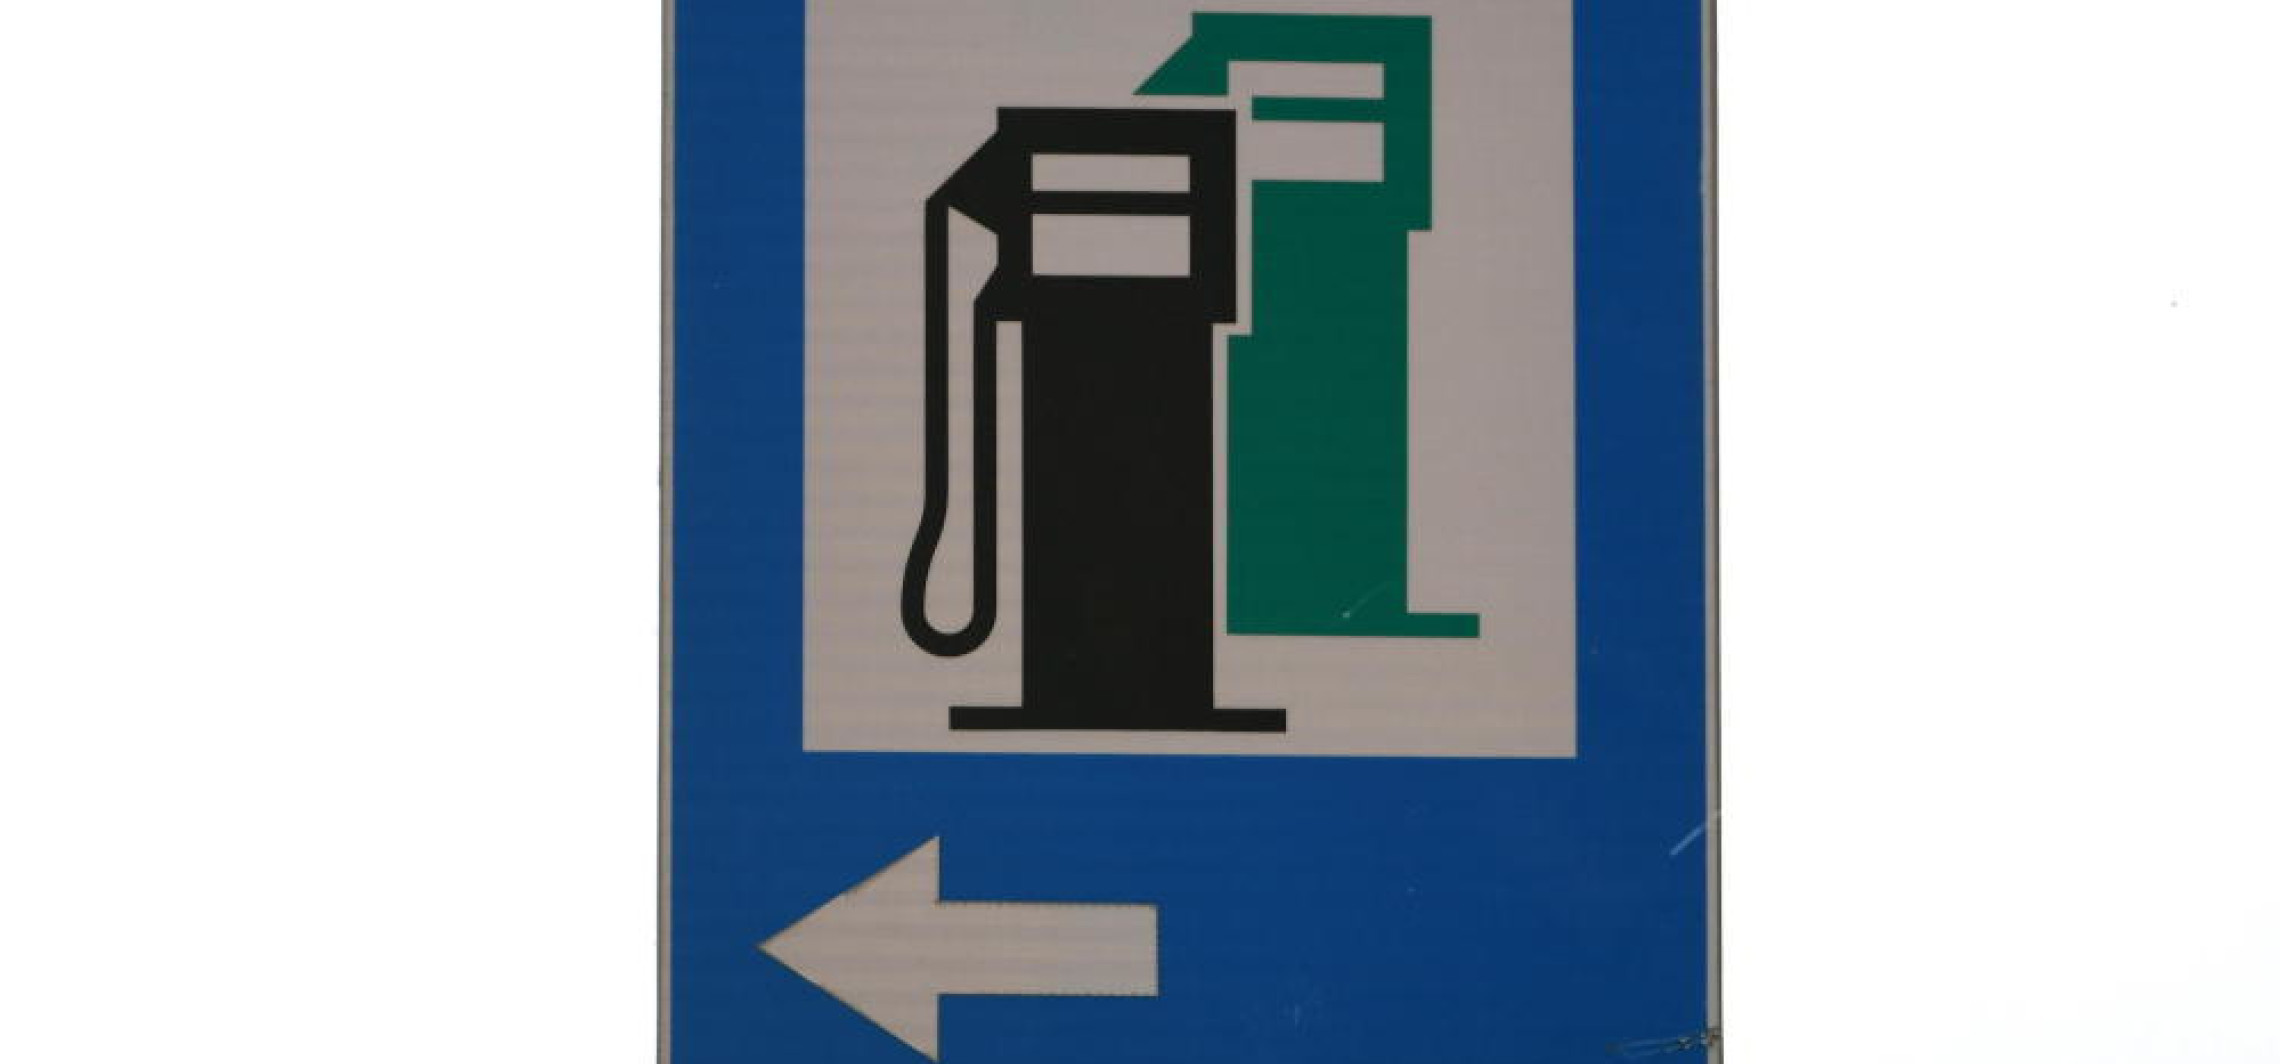 E-petrol: średnia cena benzyny Pb95 o 2 gr wyższa, ale jeszcze poniżej 6 zł